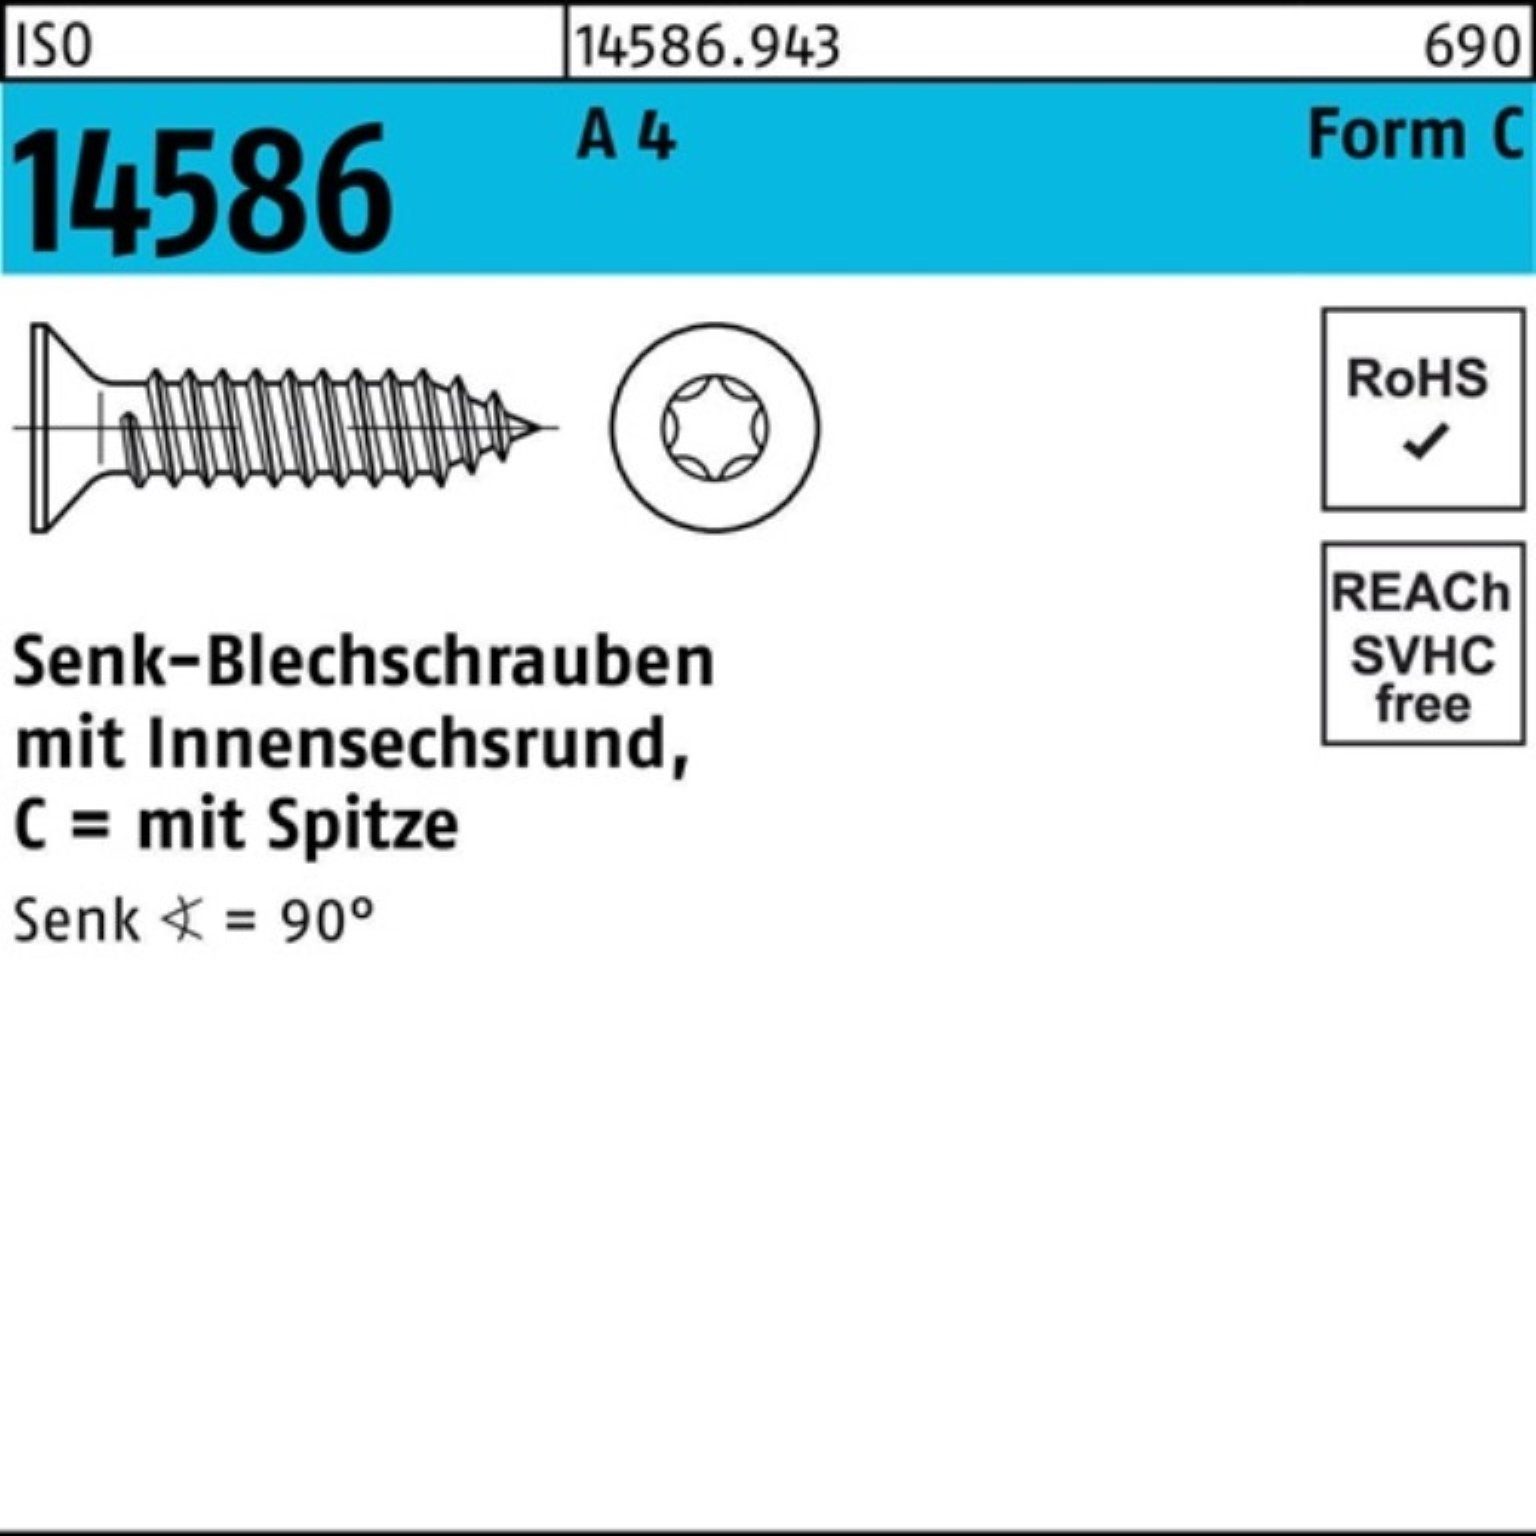 Reyher Schraube Pack 38-T25 14586 A 250 4 Senkblechschraube 250er 5,5x ISO ISR/Spitze